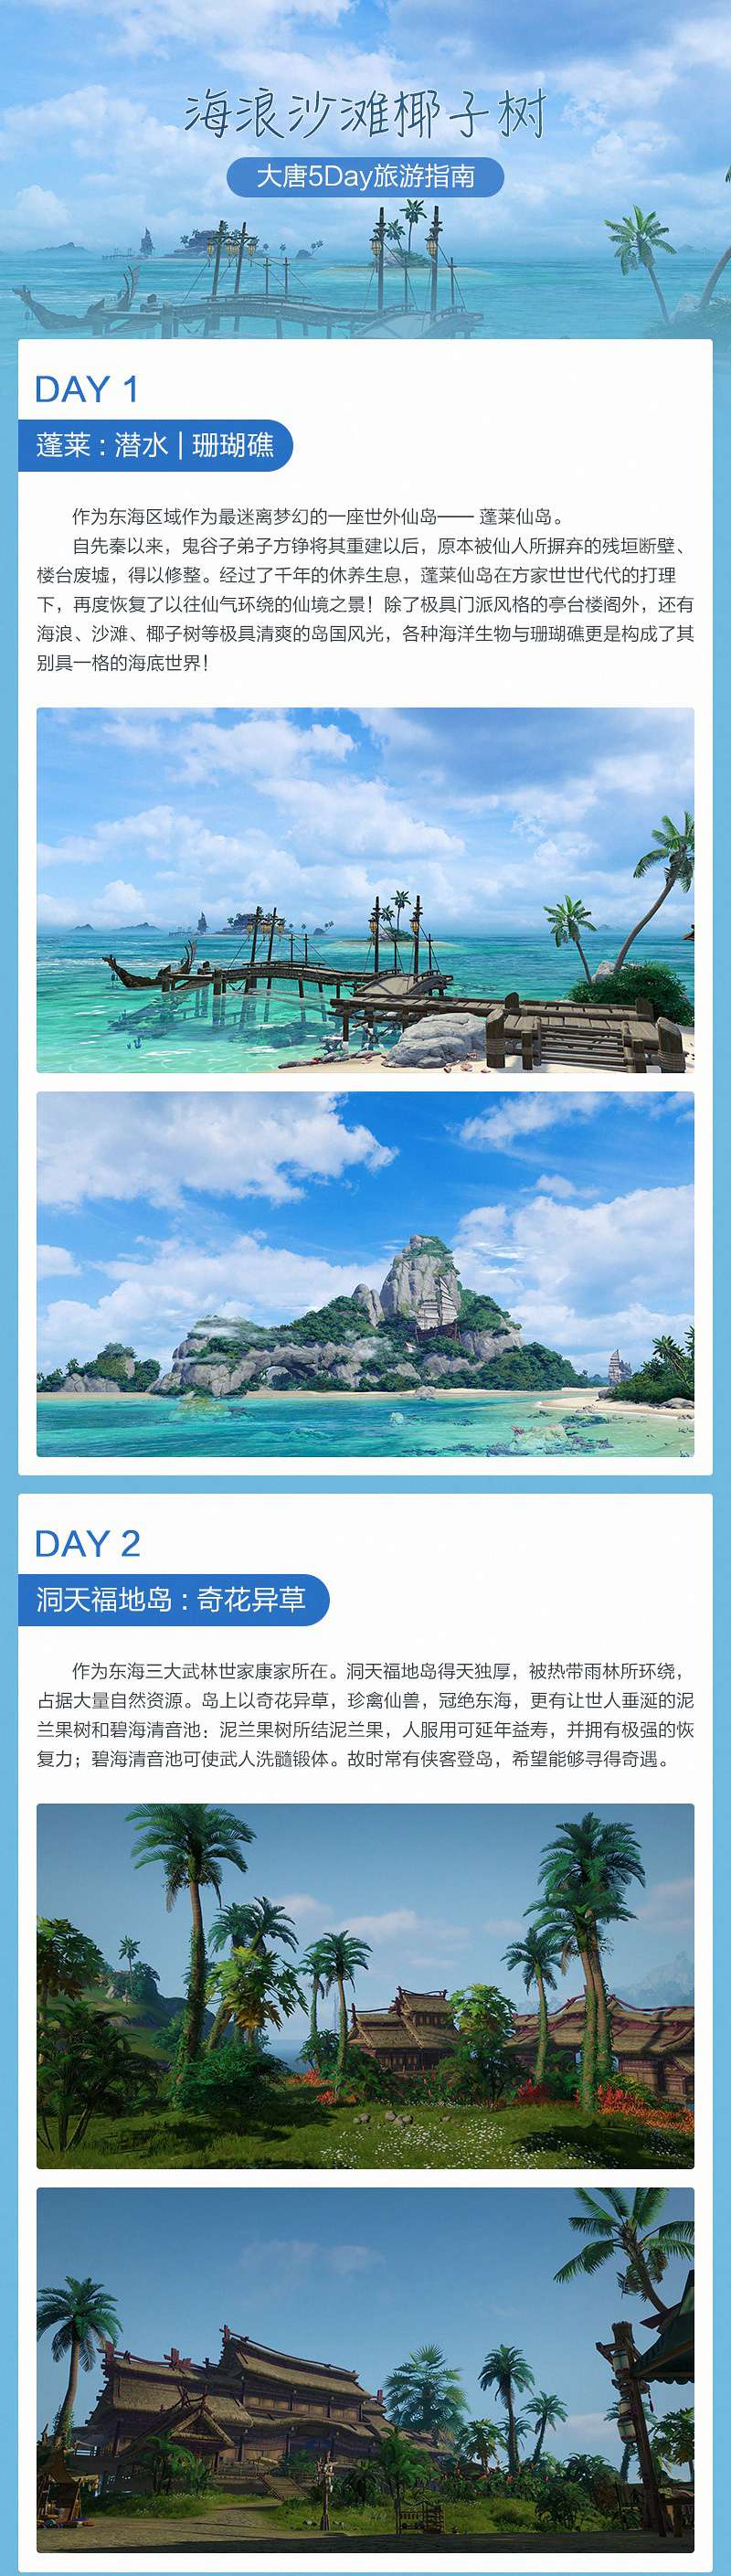 海浪沙滩椰子树 《剑网3》东海旅游指南上线